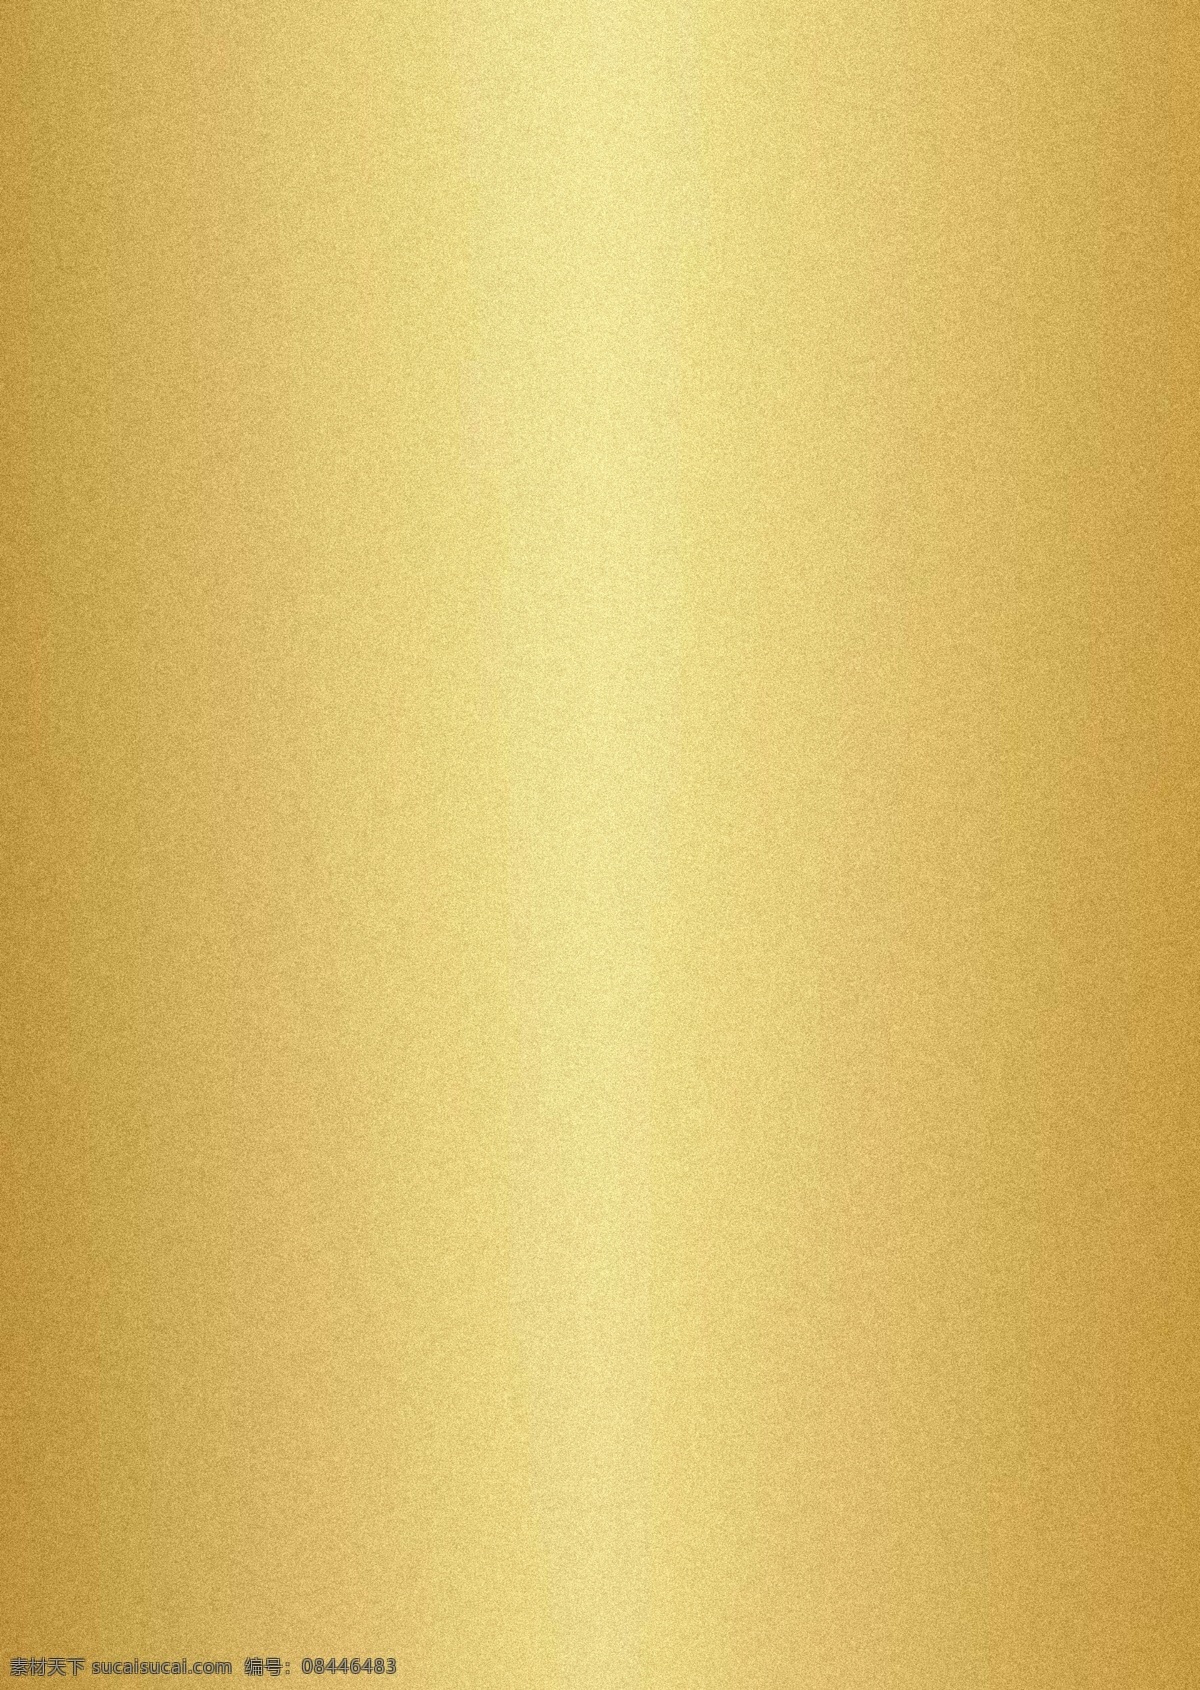 金色背景 金色 黄色 金属 拉丝 背景 背景素材 底纹边框 背景底纹